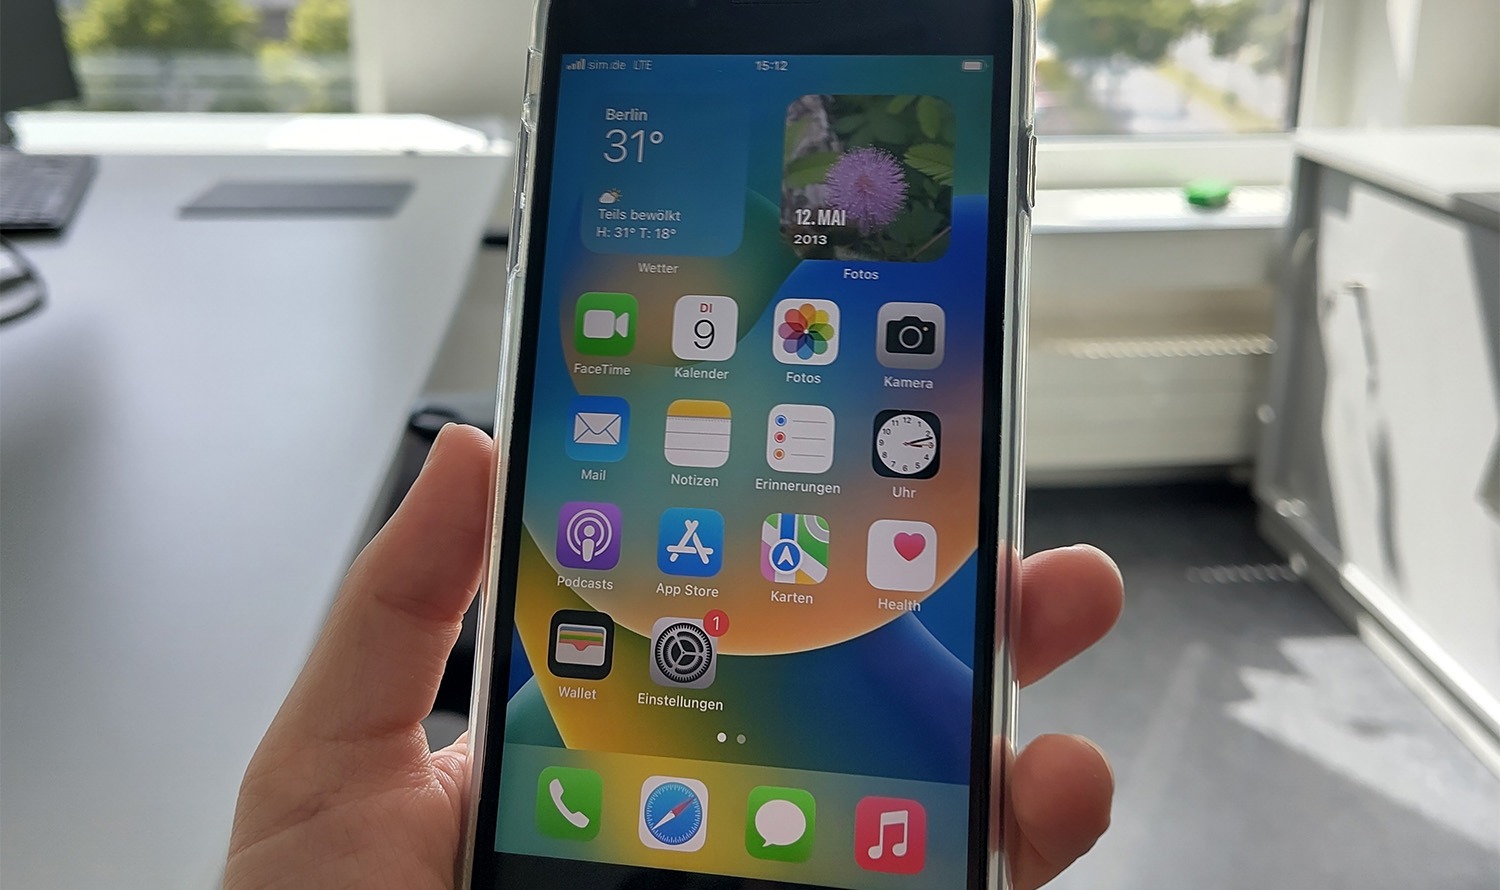 Resimde, ekranında çeşitli uygulamalar bulunan bir akıllı telefonu tutan bir el gösterilmektedir.